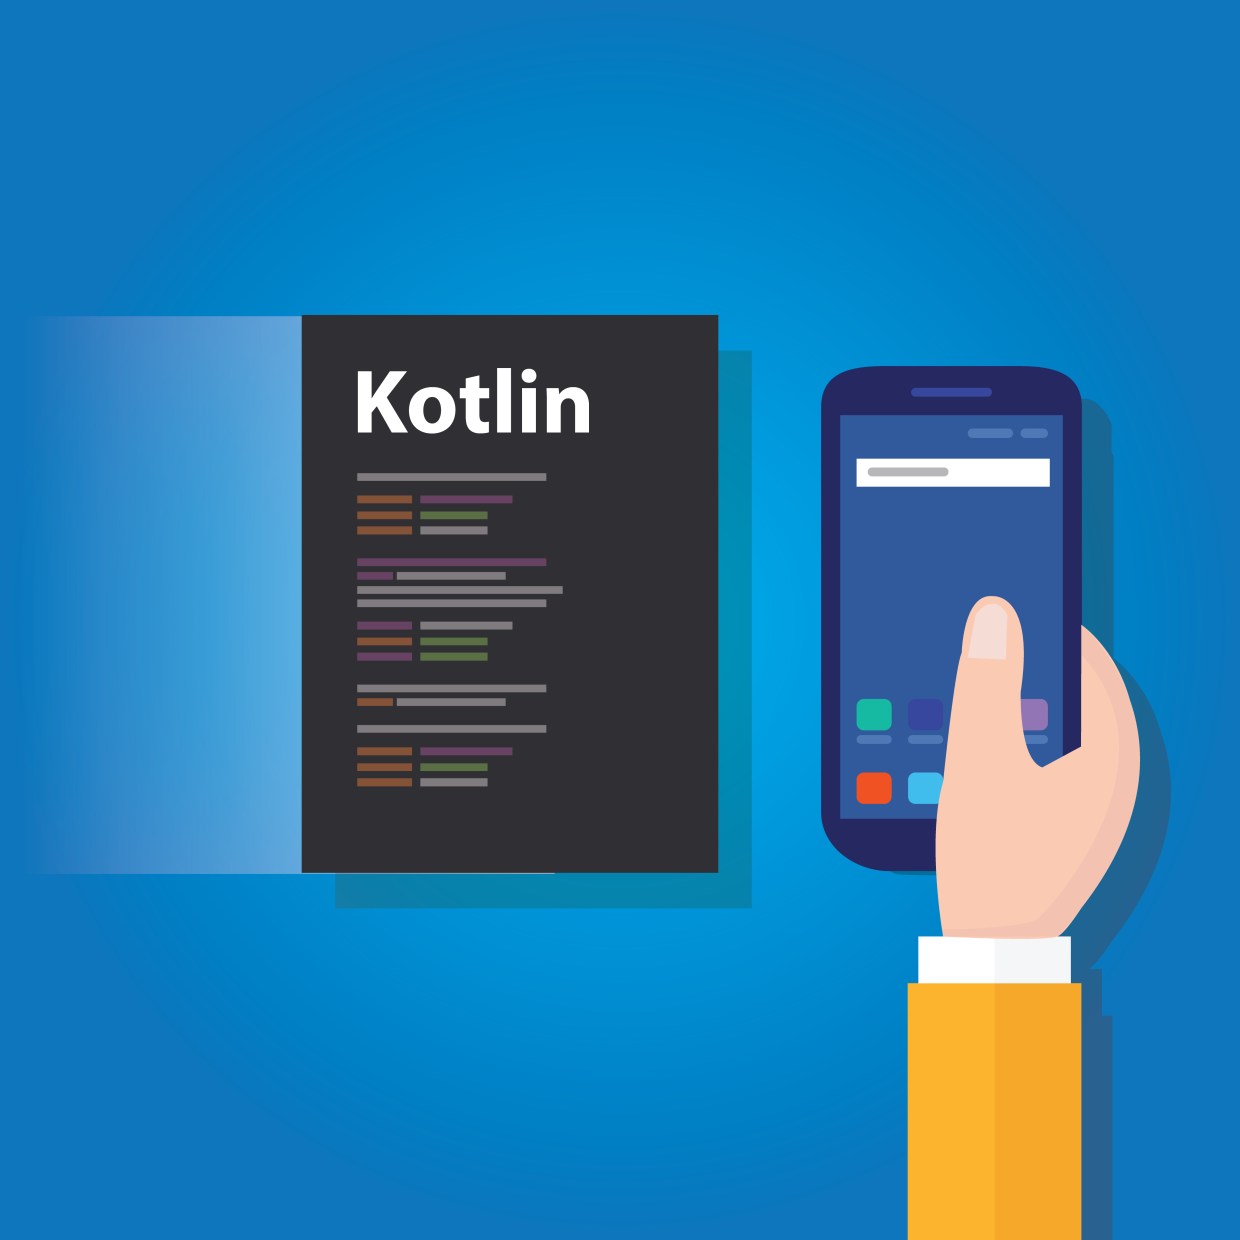 Kotlin-based malicious apps penetrate Google market